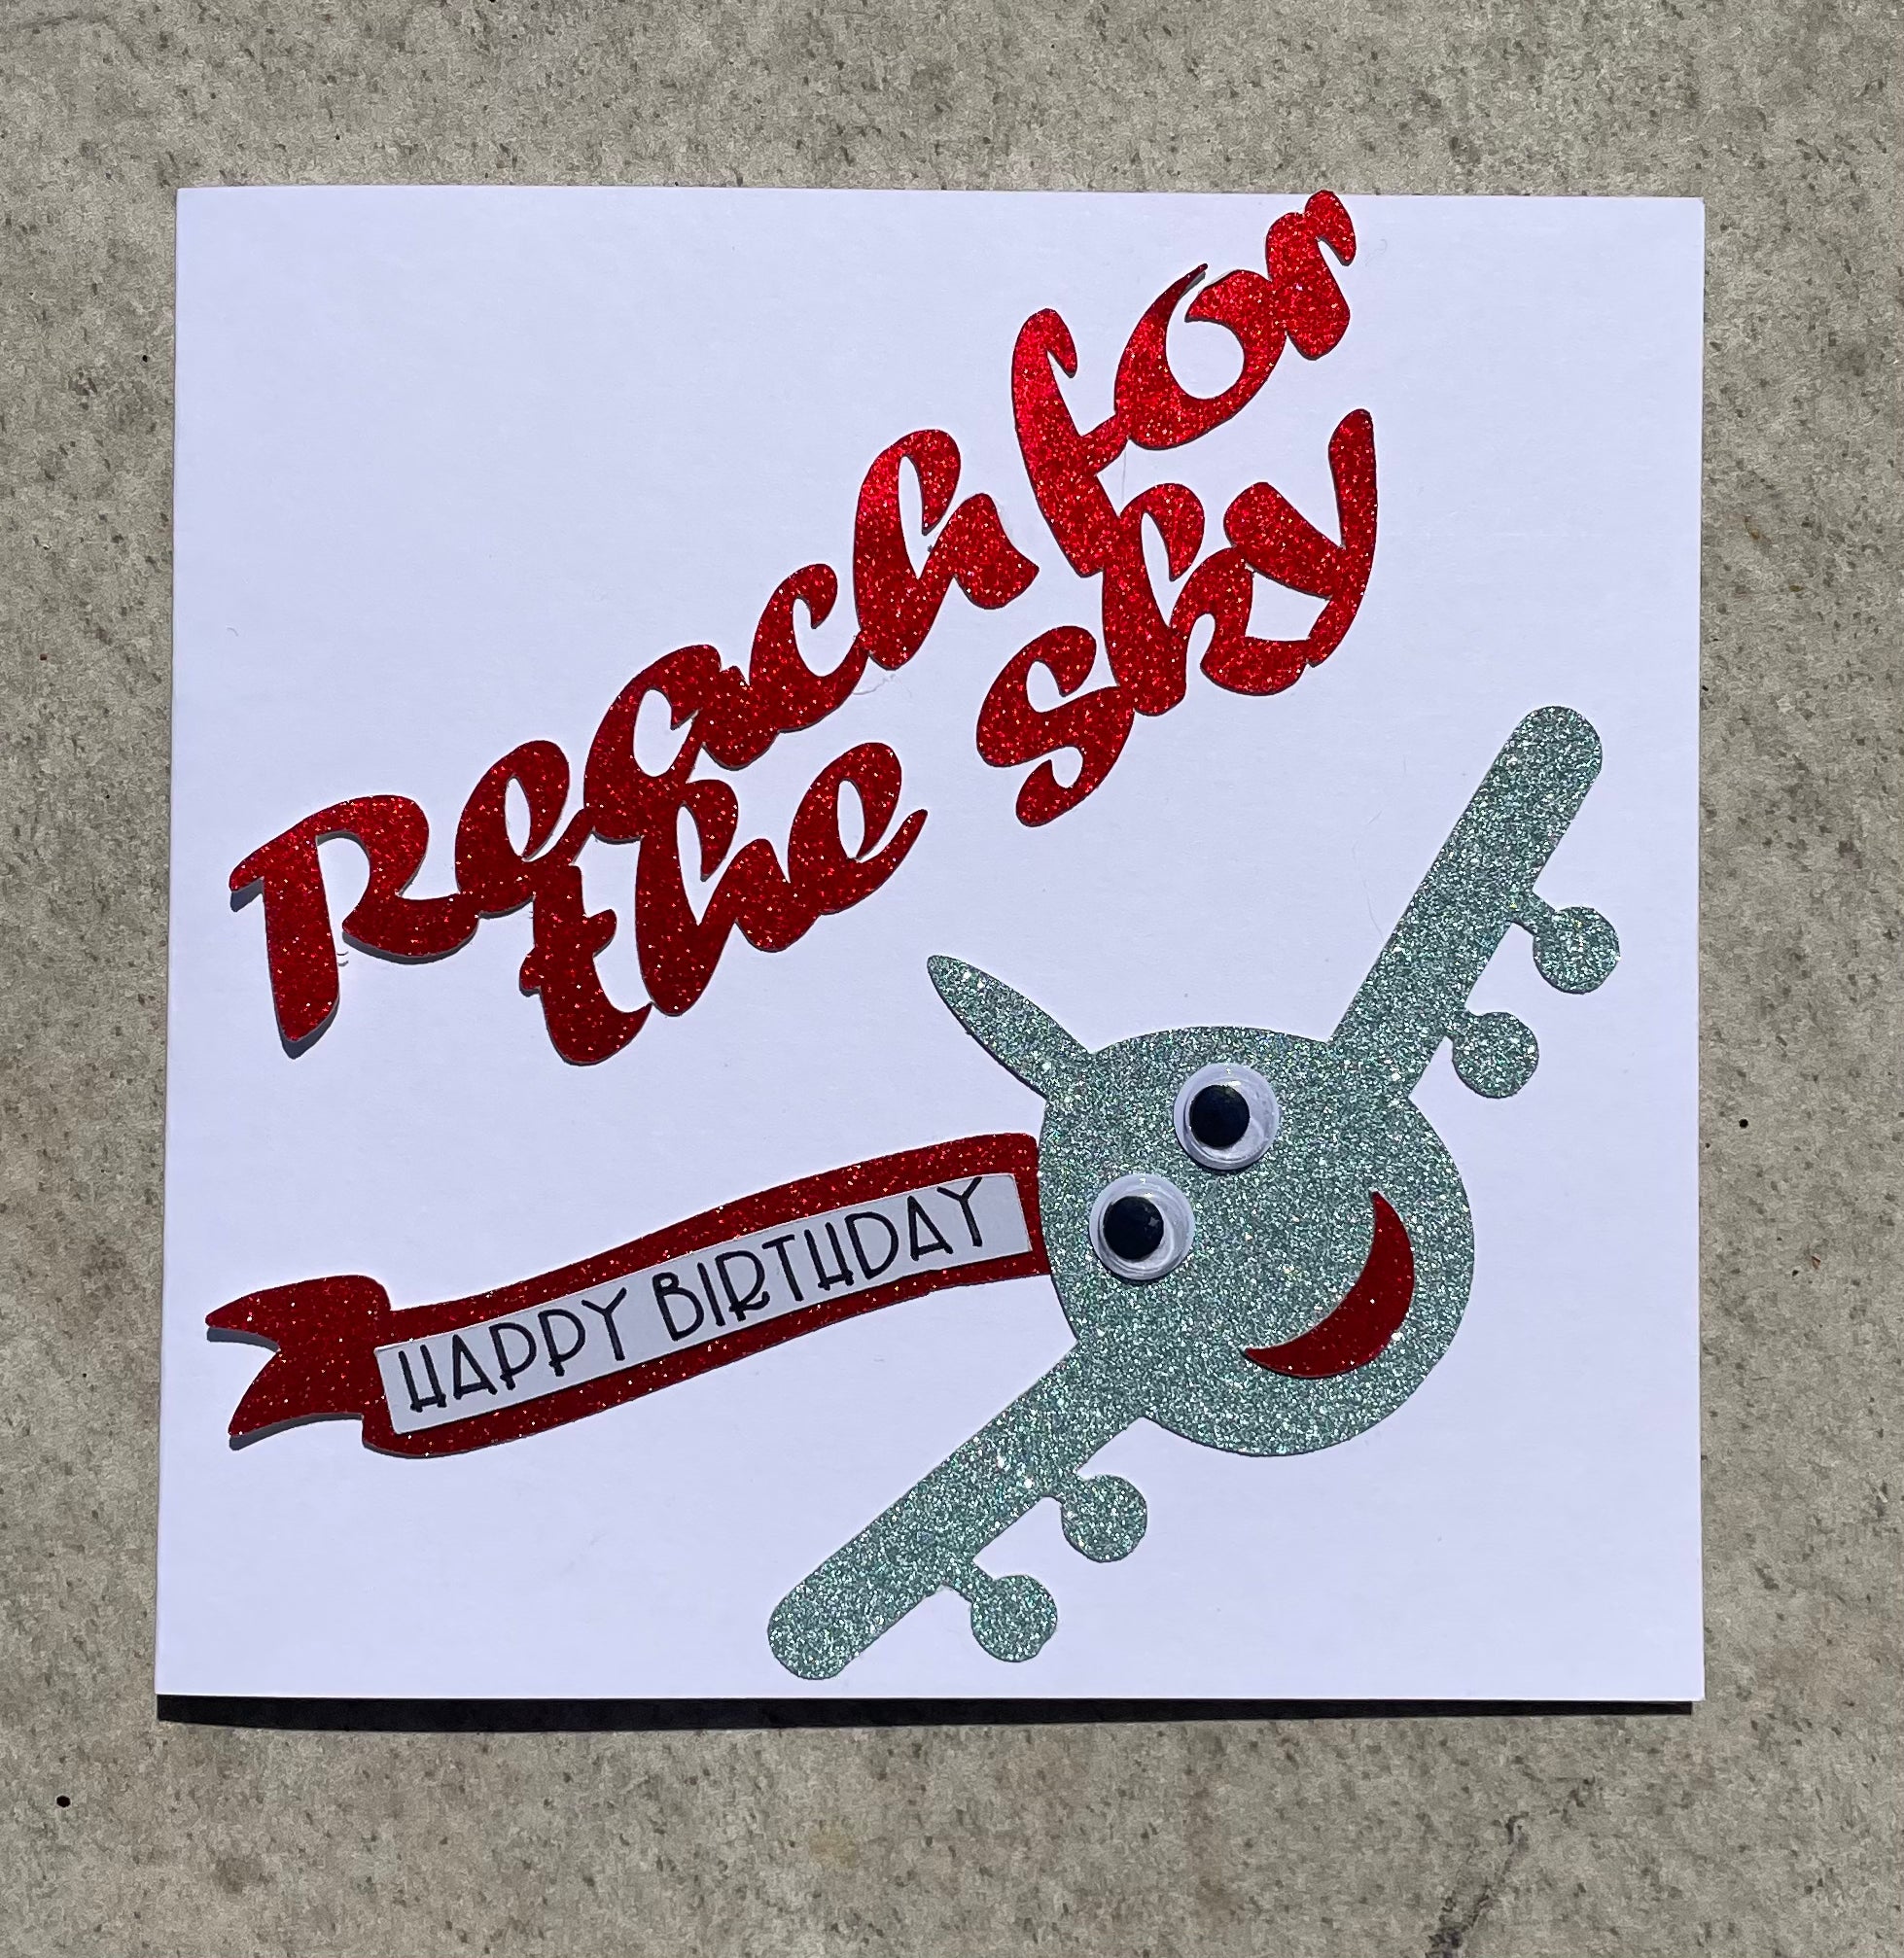 'Reach for the Sky' handmade birthday card